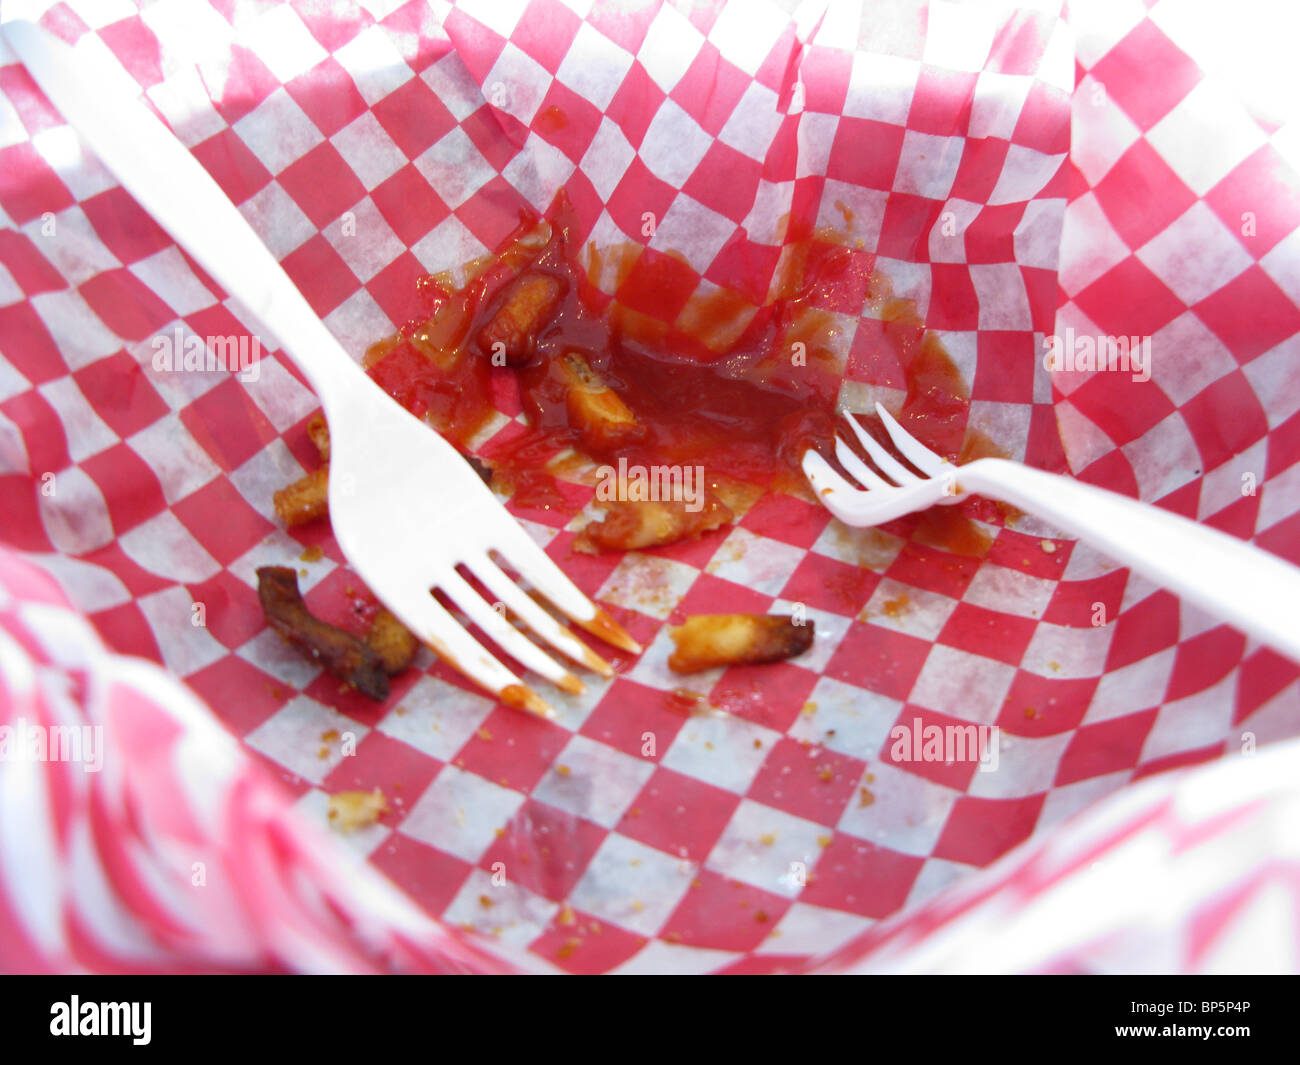 Zwei weiße Kunststoff Gabeln in einem rot-weiß karierten Korb mit Pommes und Ketchup gegessen Resten. Stockfoto